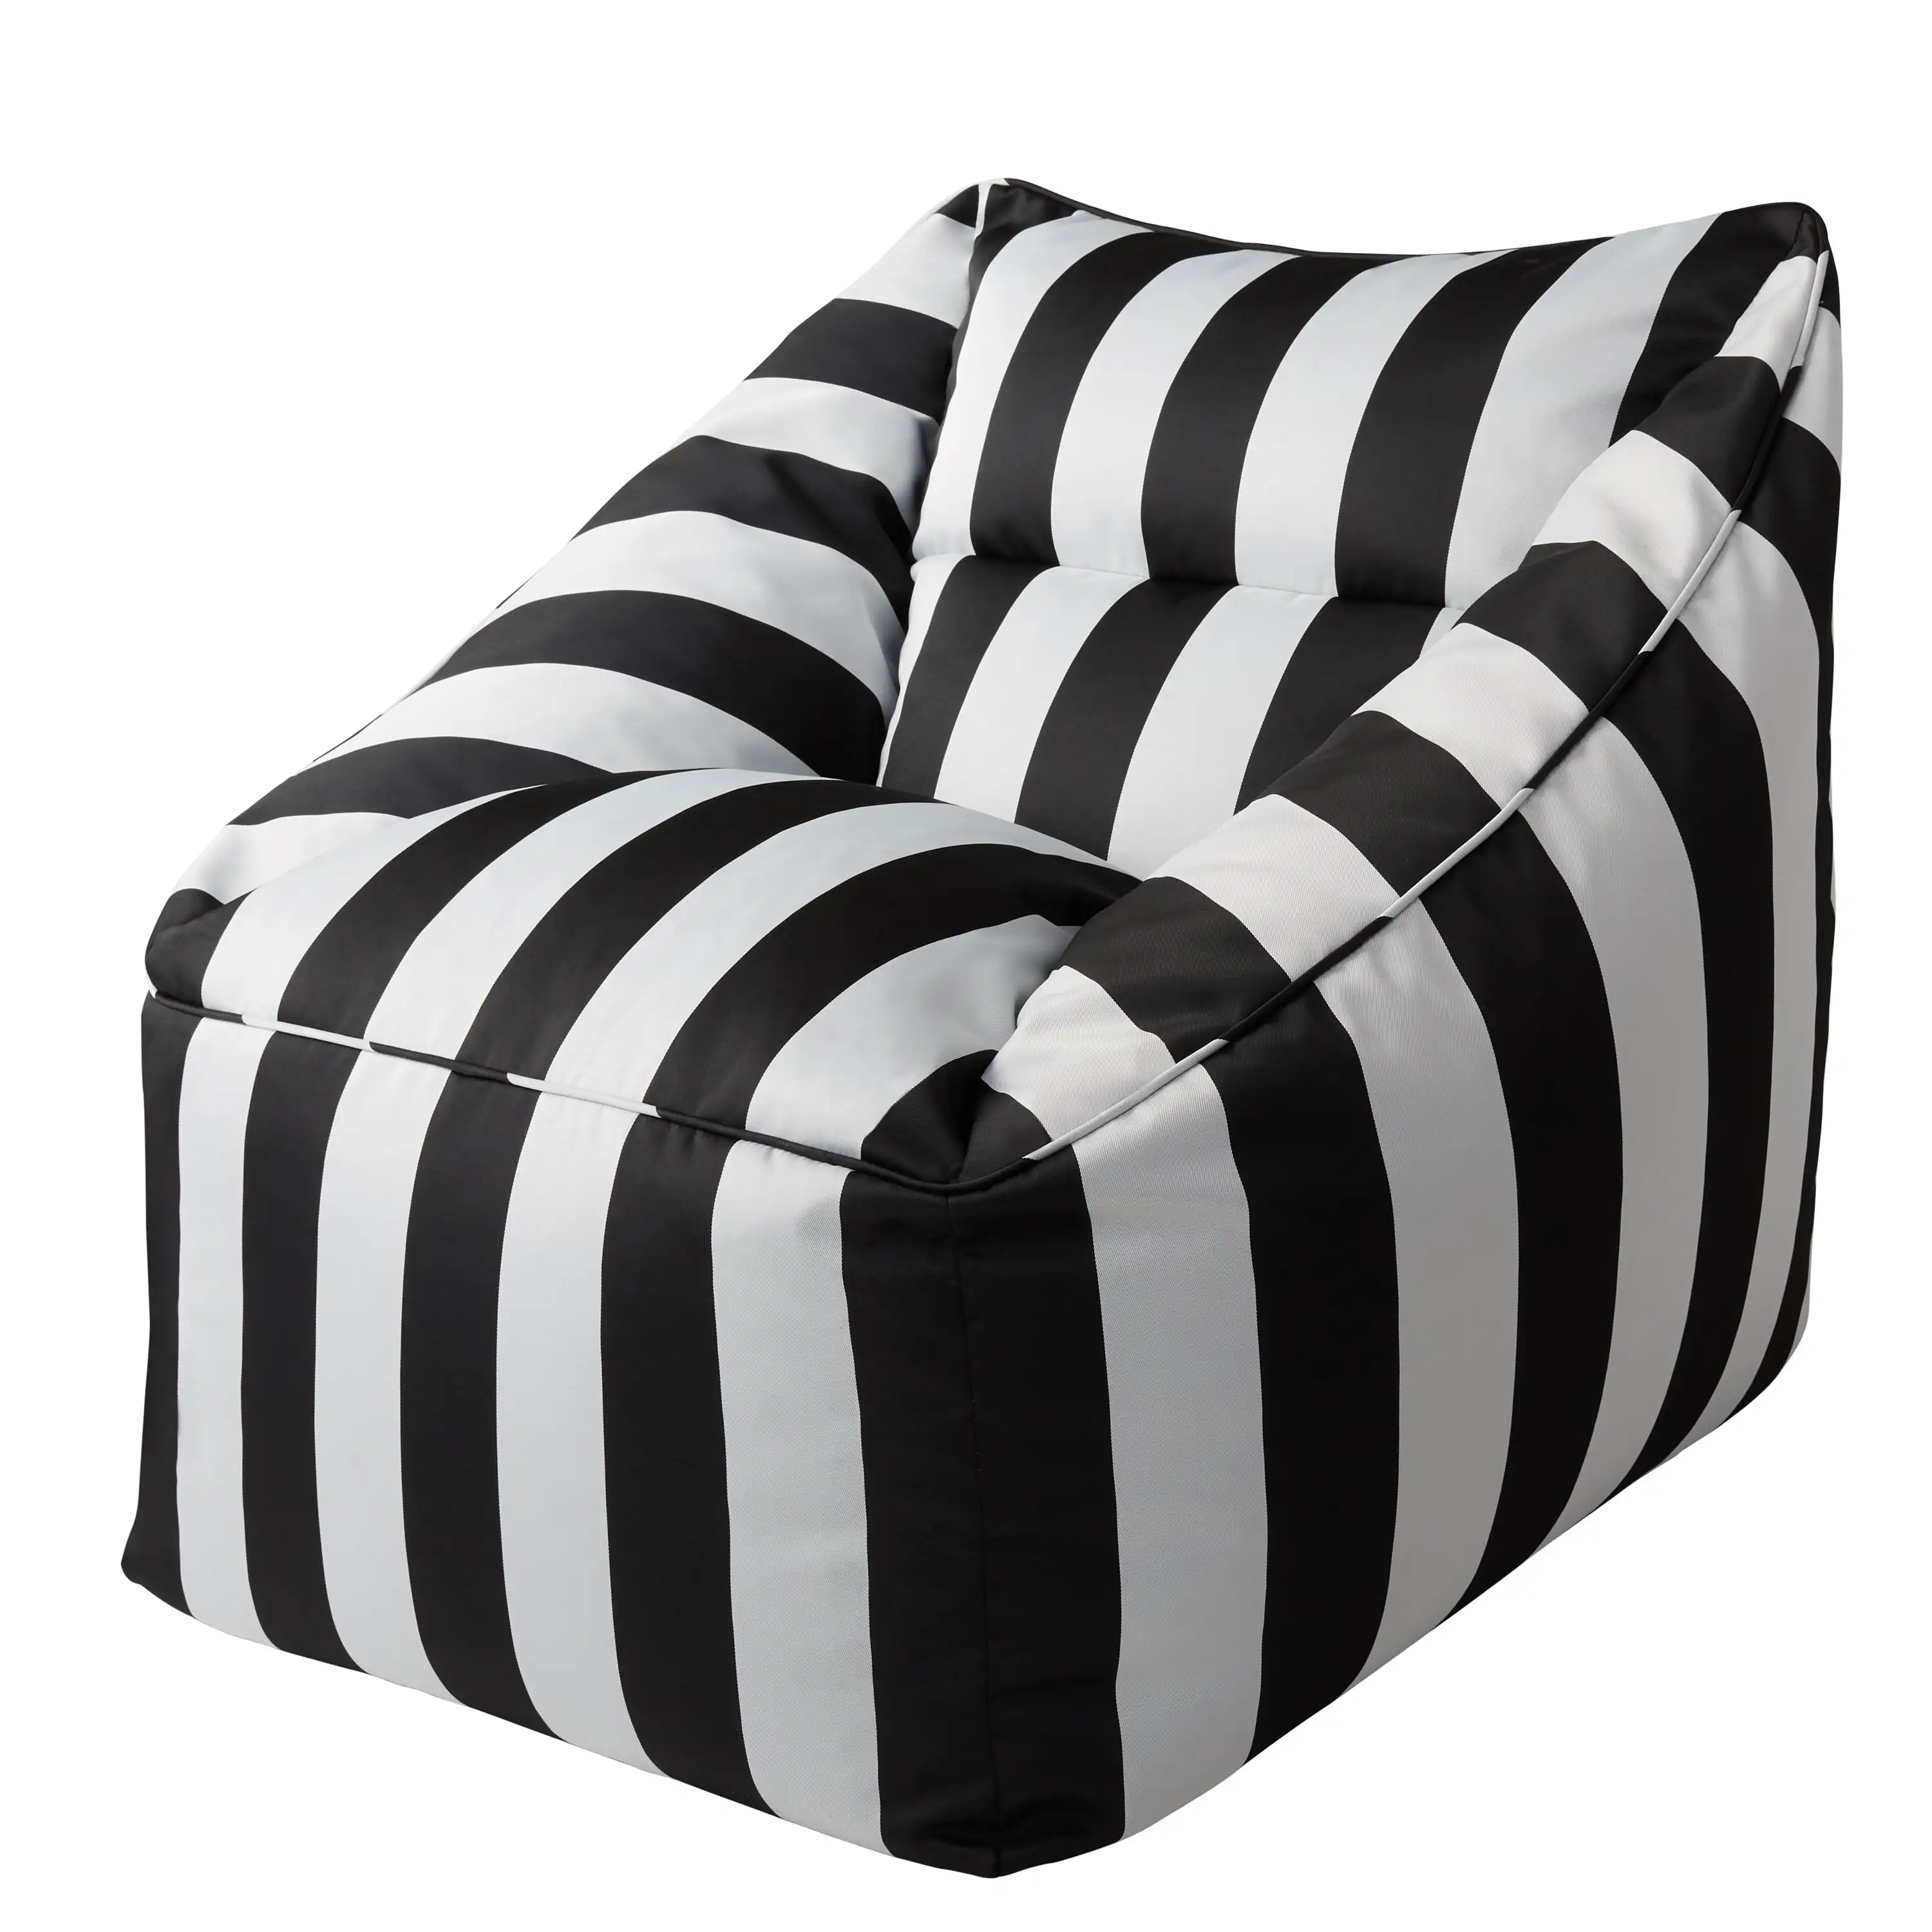 

Better Homes & Gardens Dream Bean Patio Bean Bag Chair, Black and White Cabana Stripes